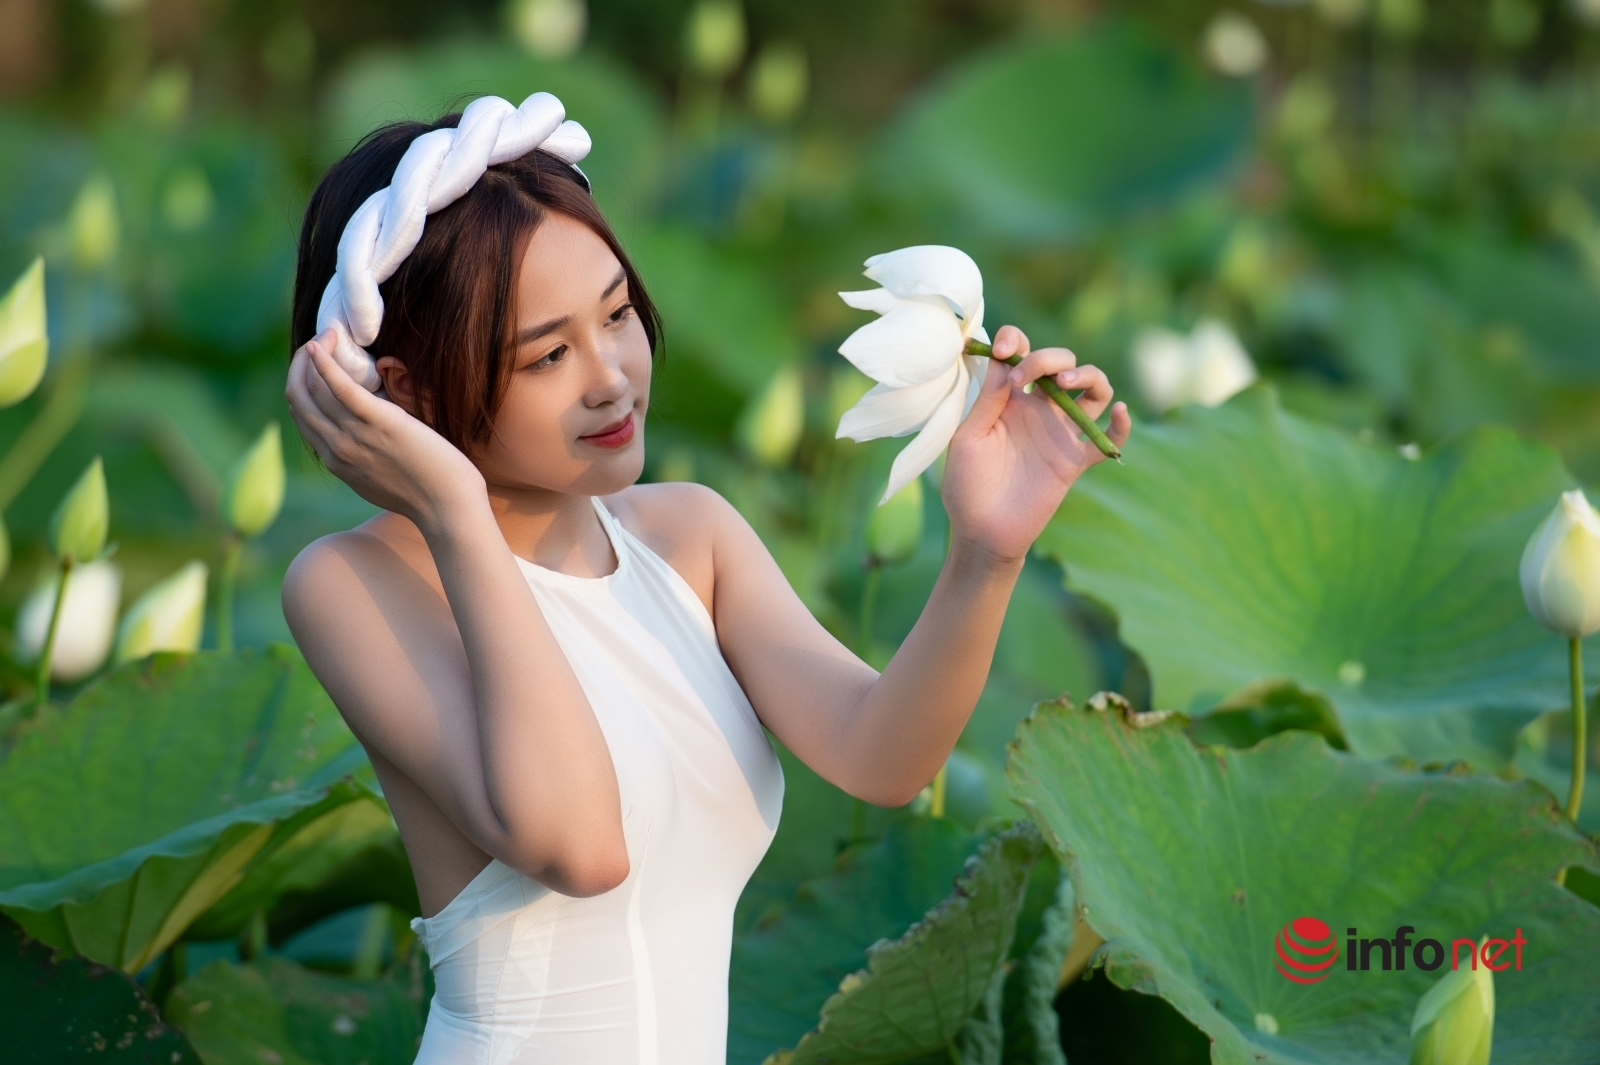 Đầm sen trắng là một trong những trang phục truyền thống đẹp nhất của phụ nữ Việt Nam. Hãy cùng chiêm ngưỡng nét đẹp thanh tao và dịu dàng của đầm sen trắng trong hình ảnh tuyệt đẹp này.